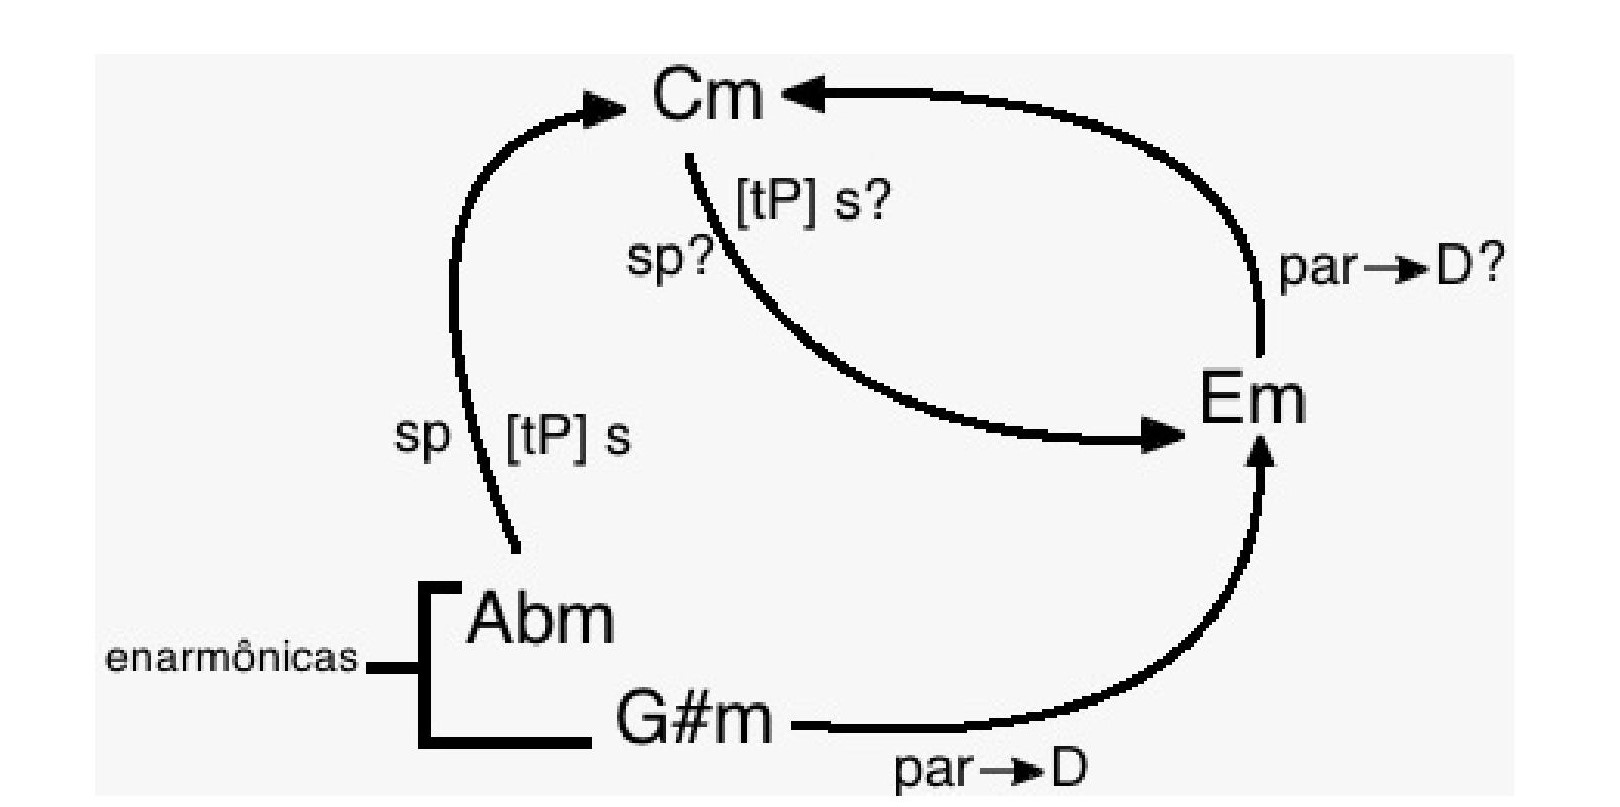 Fig. 18: Relações
funcionais entre mediantes e submediantes desenhadas por meio das modulações a
Lá be- mol menor e a Sol# menor.
Usando uma notação funcional heterodoxa: “sp” corresponde à paralela menor da subdominante menor; “[tP] s”, à subdominante menor da tônica paralela; “par -> D”, à paralela da dominante.